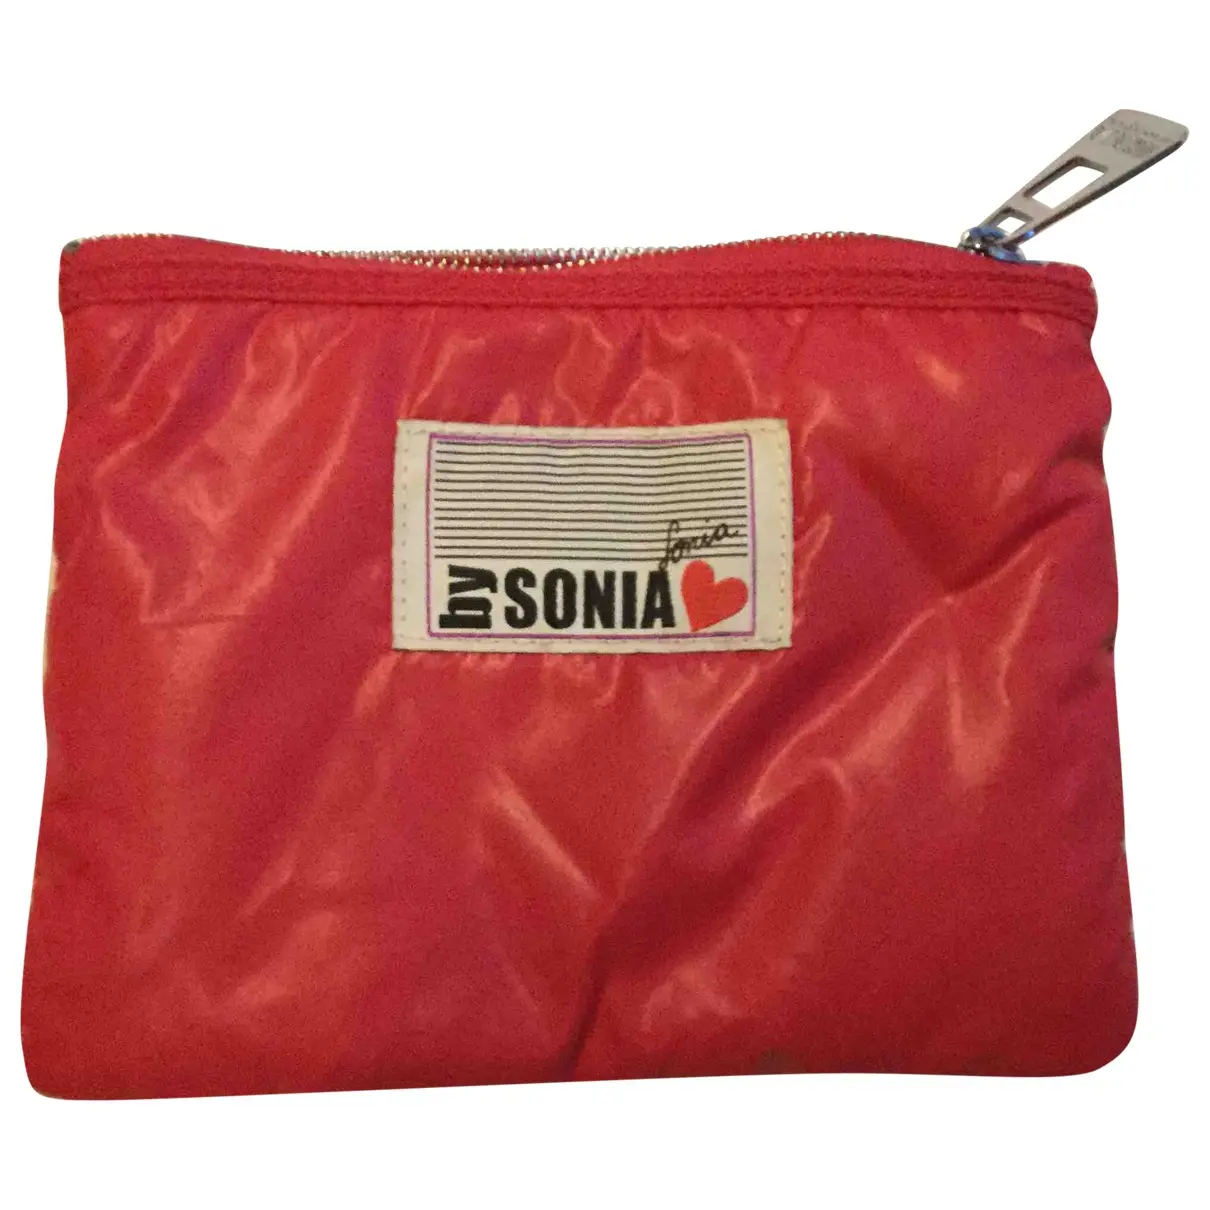 Cloth purse Sonia by Sonia Rykiel